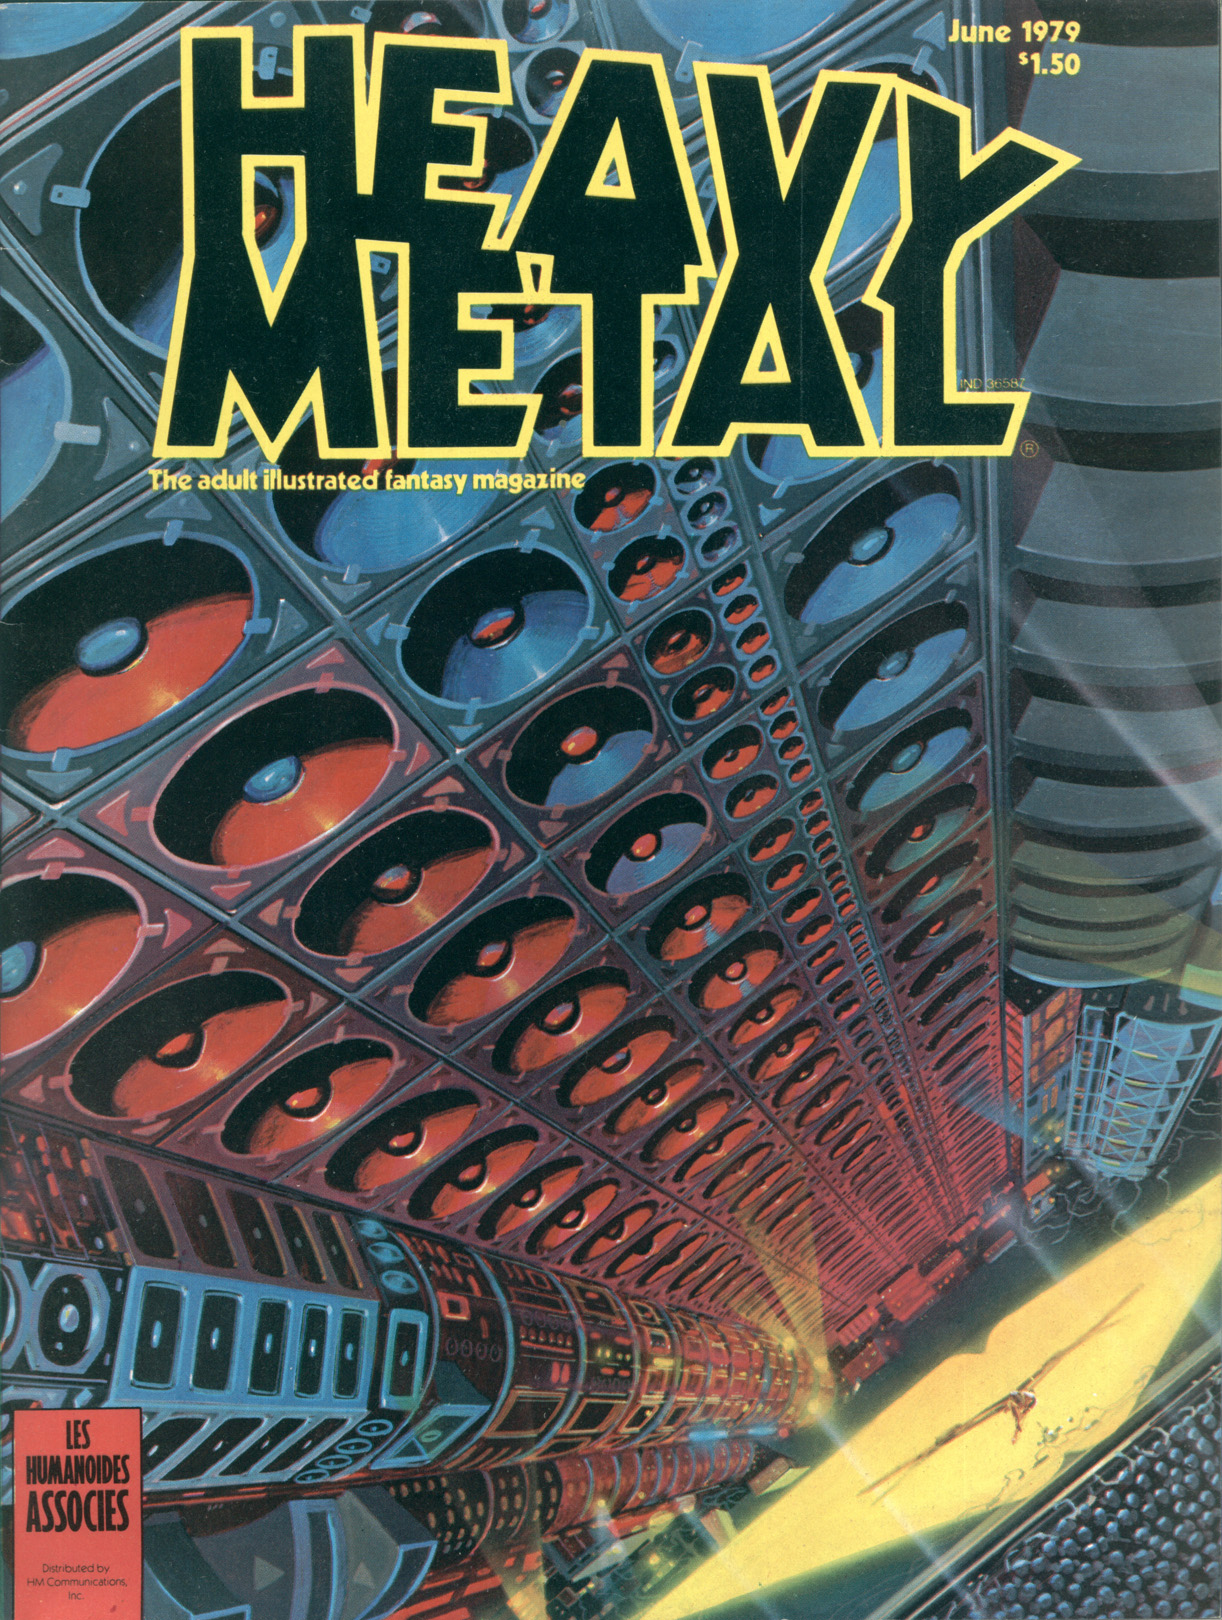 Heavy Metal. 1979. June – Volume 3 No. 2